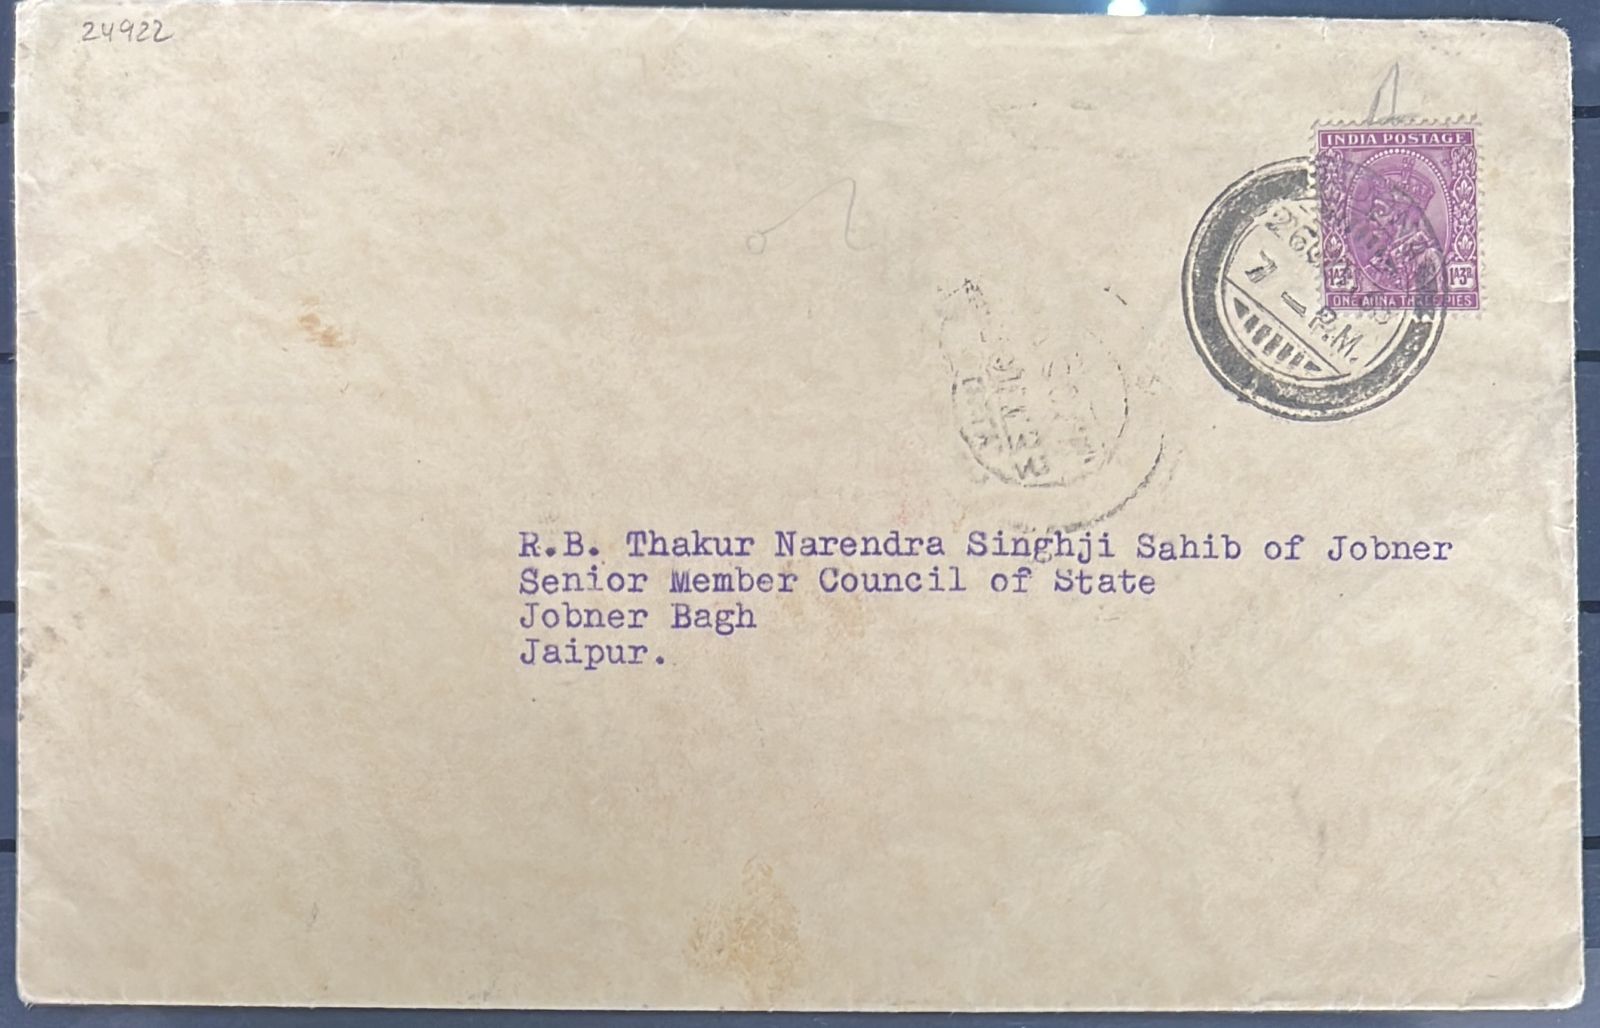 India 1933 Letter Addresses to Thakur Narendra Singh of Jobner